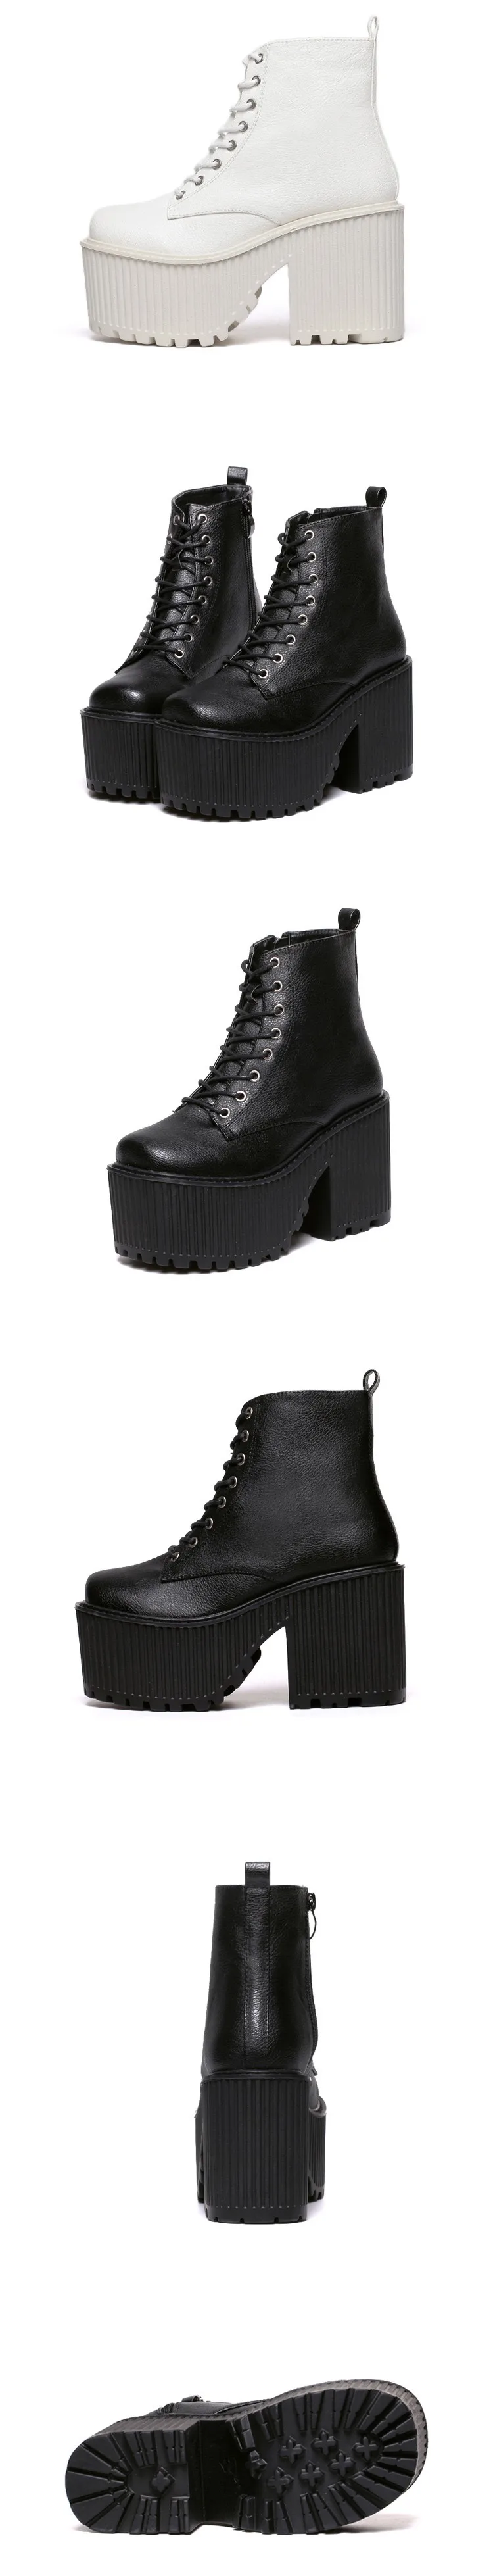 Женские сапоги стильные зимние сапоги на платформе и высоком каблуке женские ботильоны мотоциклетные ботинки в стиле панк-рок обувь на платформе черного цвета